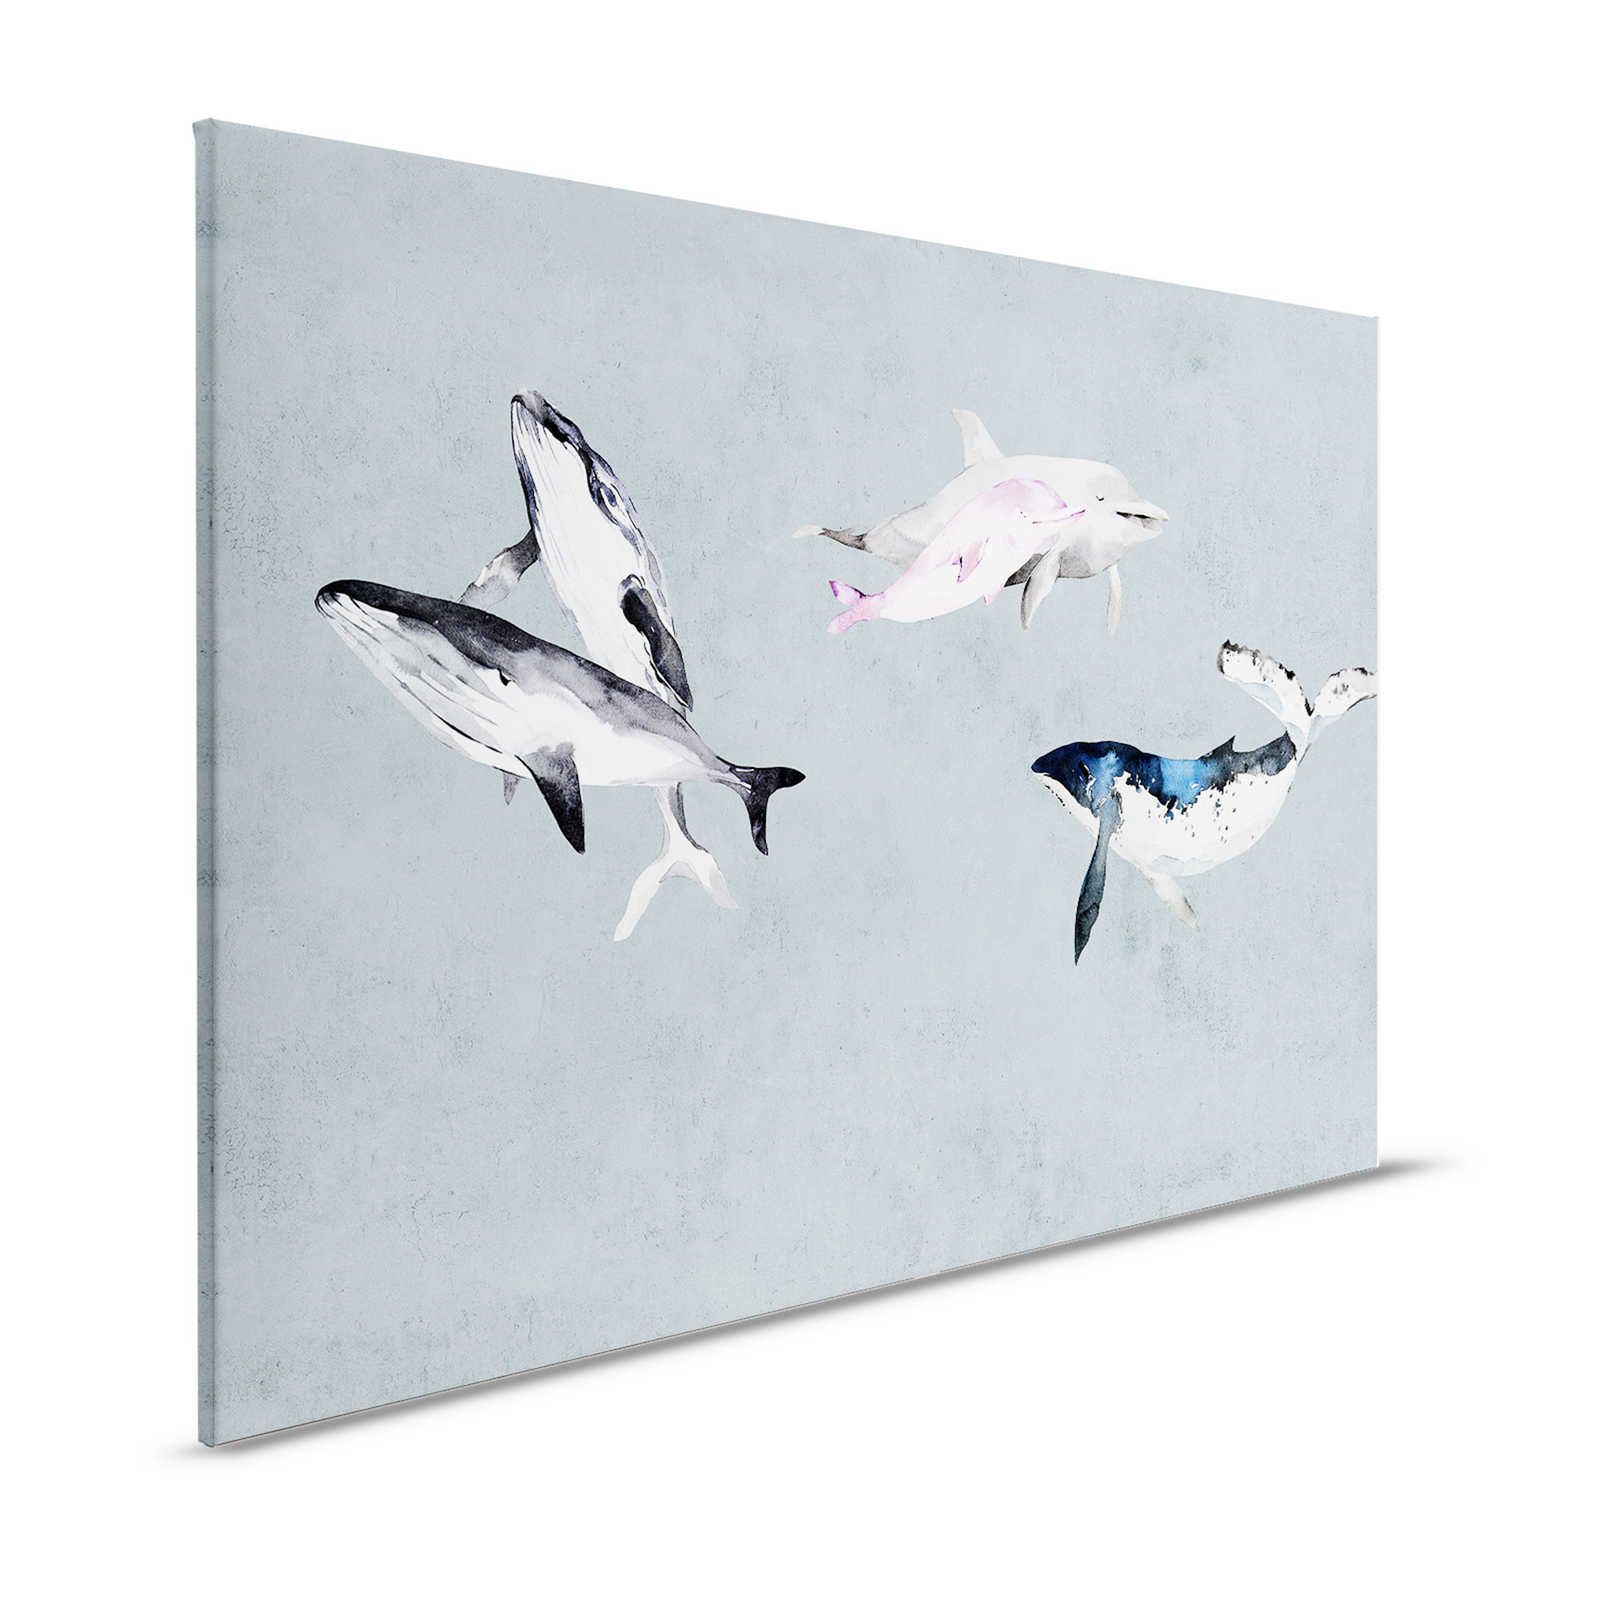 Oceans Five 1 - Cuadro en lienzo Ballenas y delfines en estilo acuarela - 1,20 m x 0,80 m
